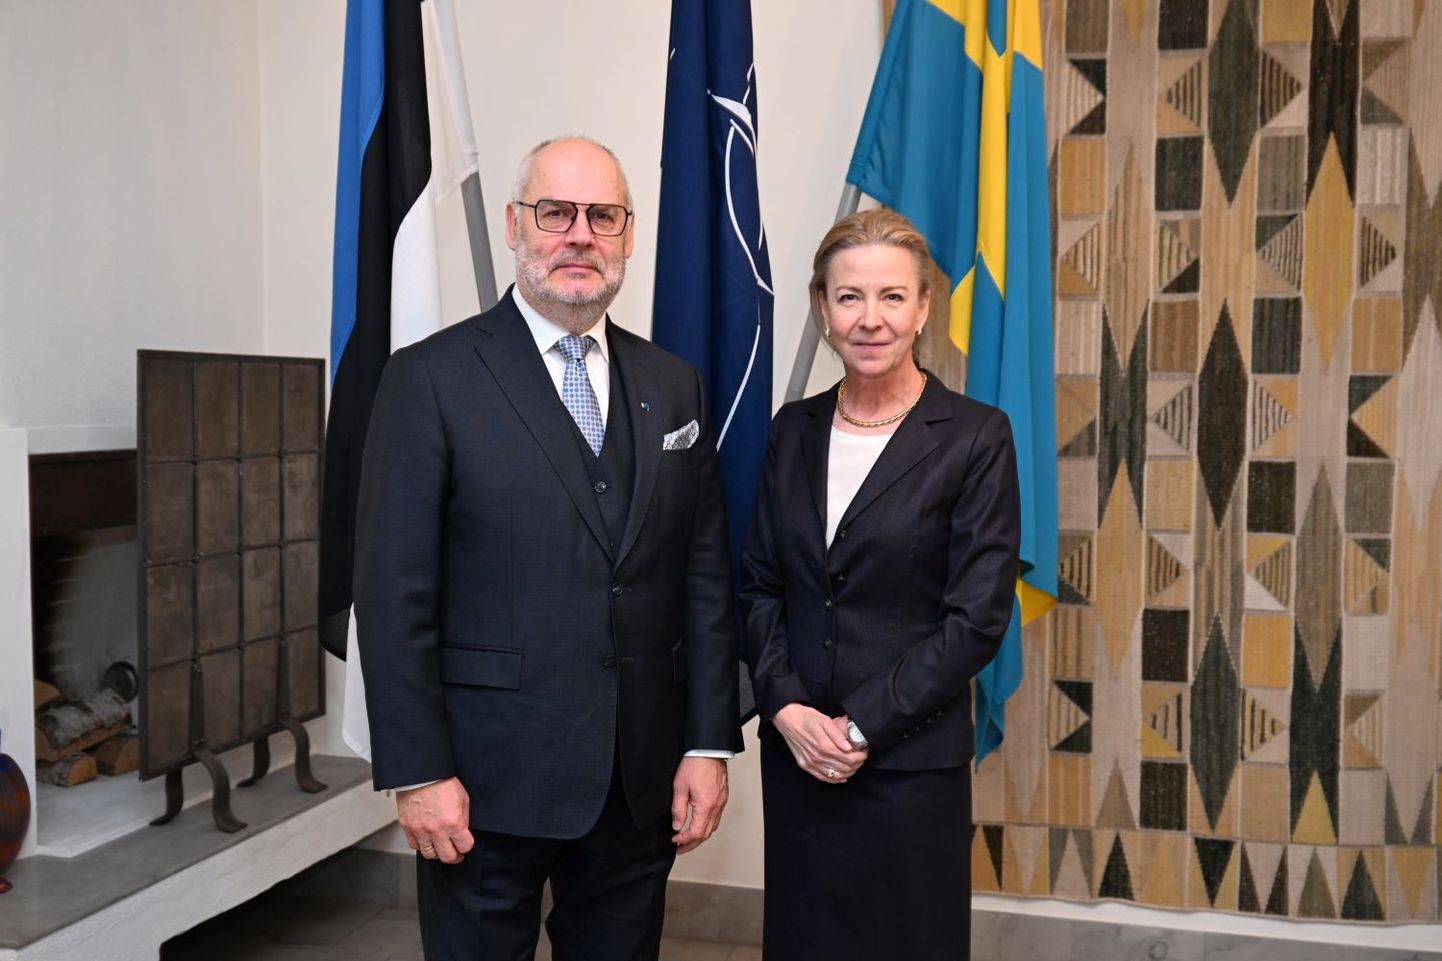 President Karis tänas Rootsit meie alliansi tugevamaks muutmise eest.